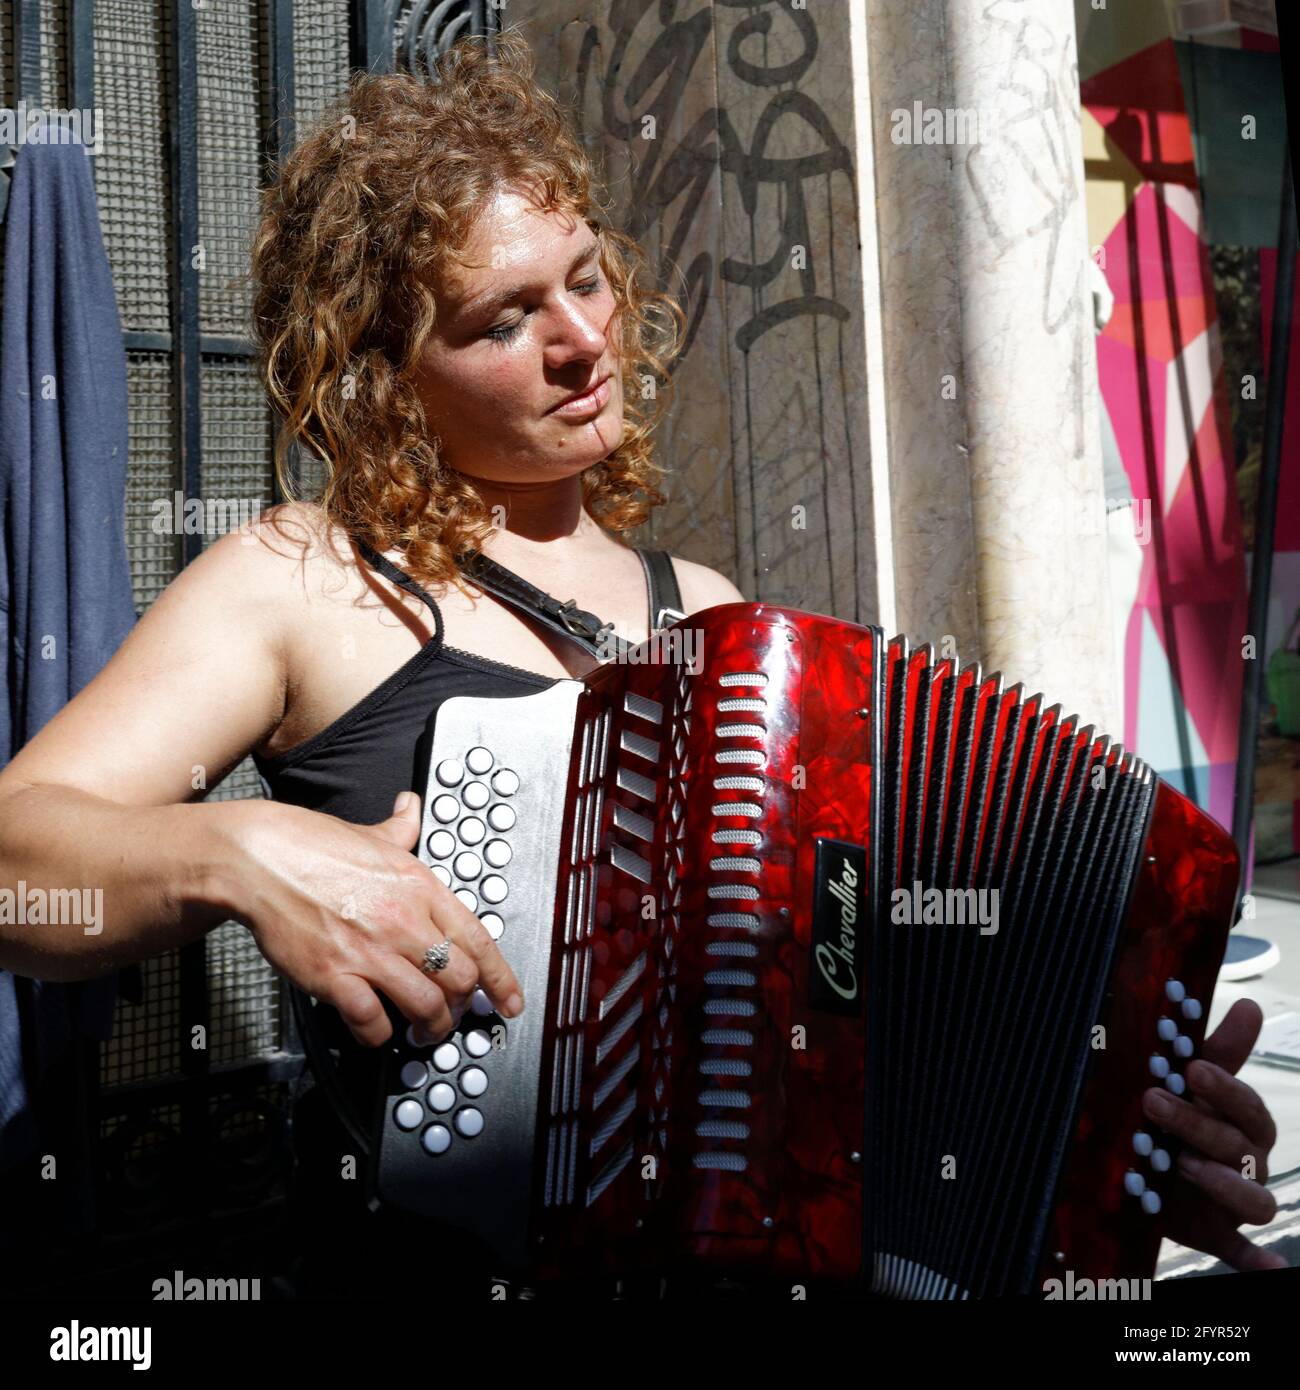 jouer de l'accordéon, Place St. Étienne à Liège Belgique Stock Photo